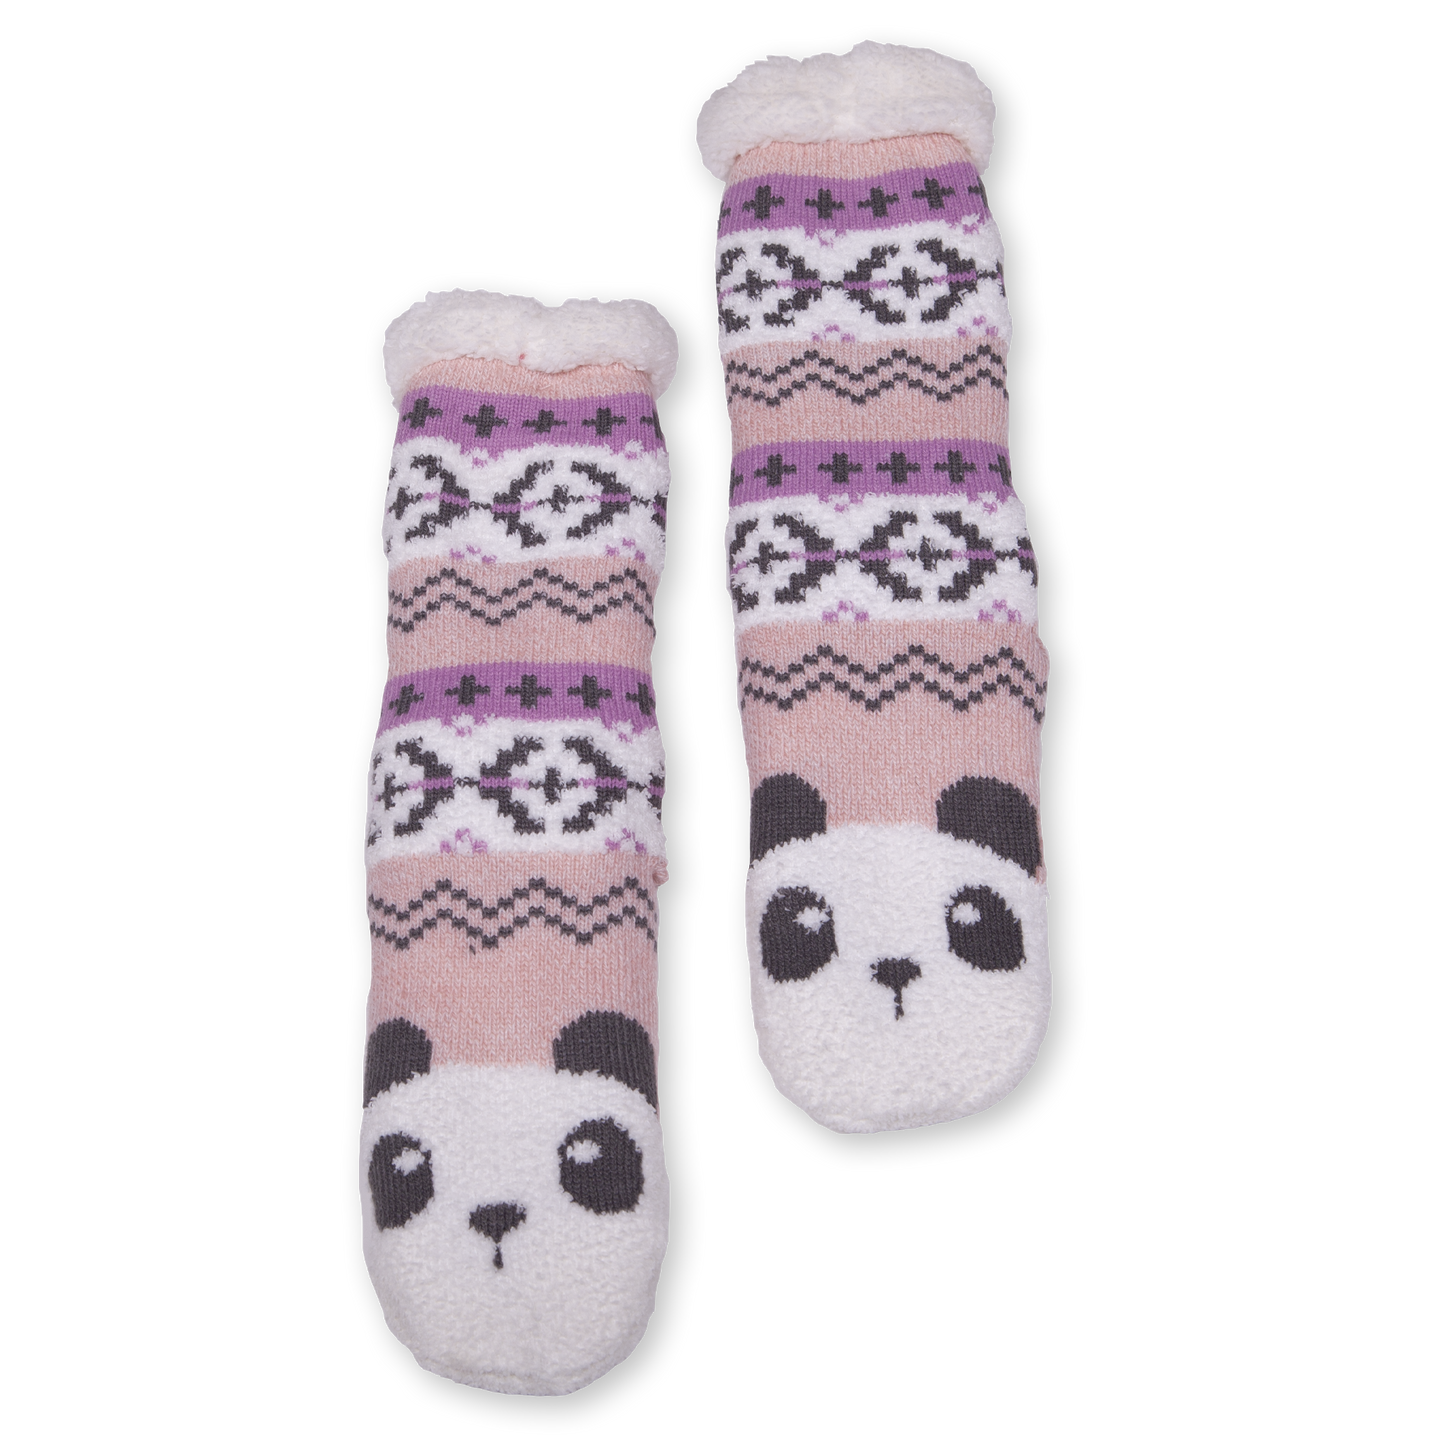 Women's Panda Cozy Warmer Slipper Socks with Sherpa Lining